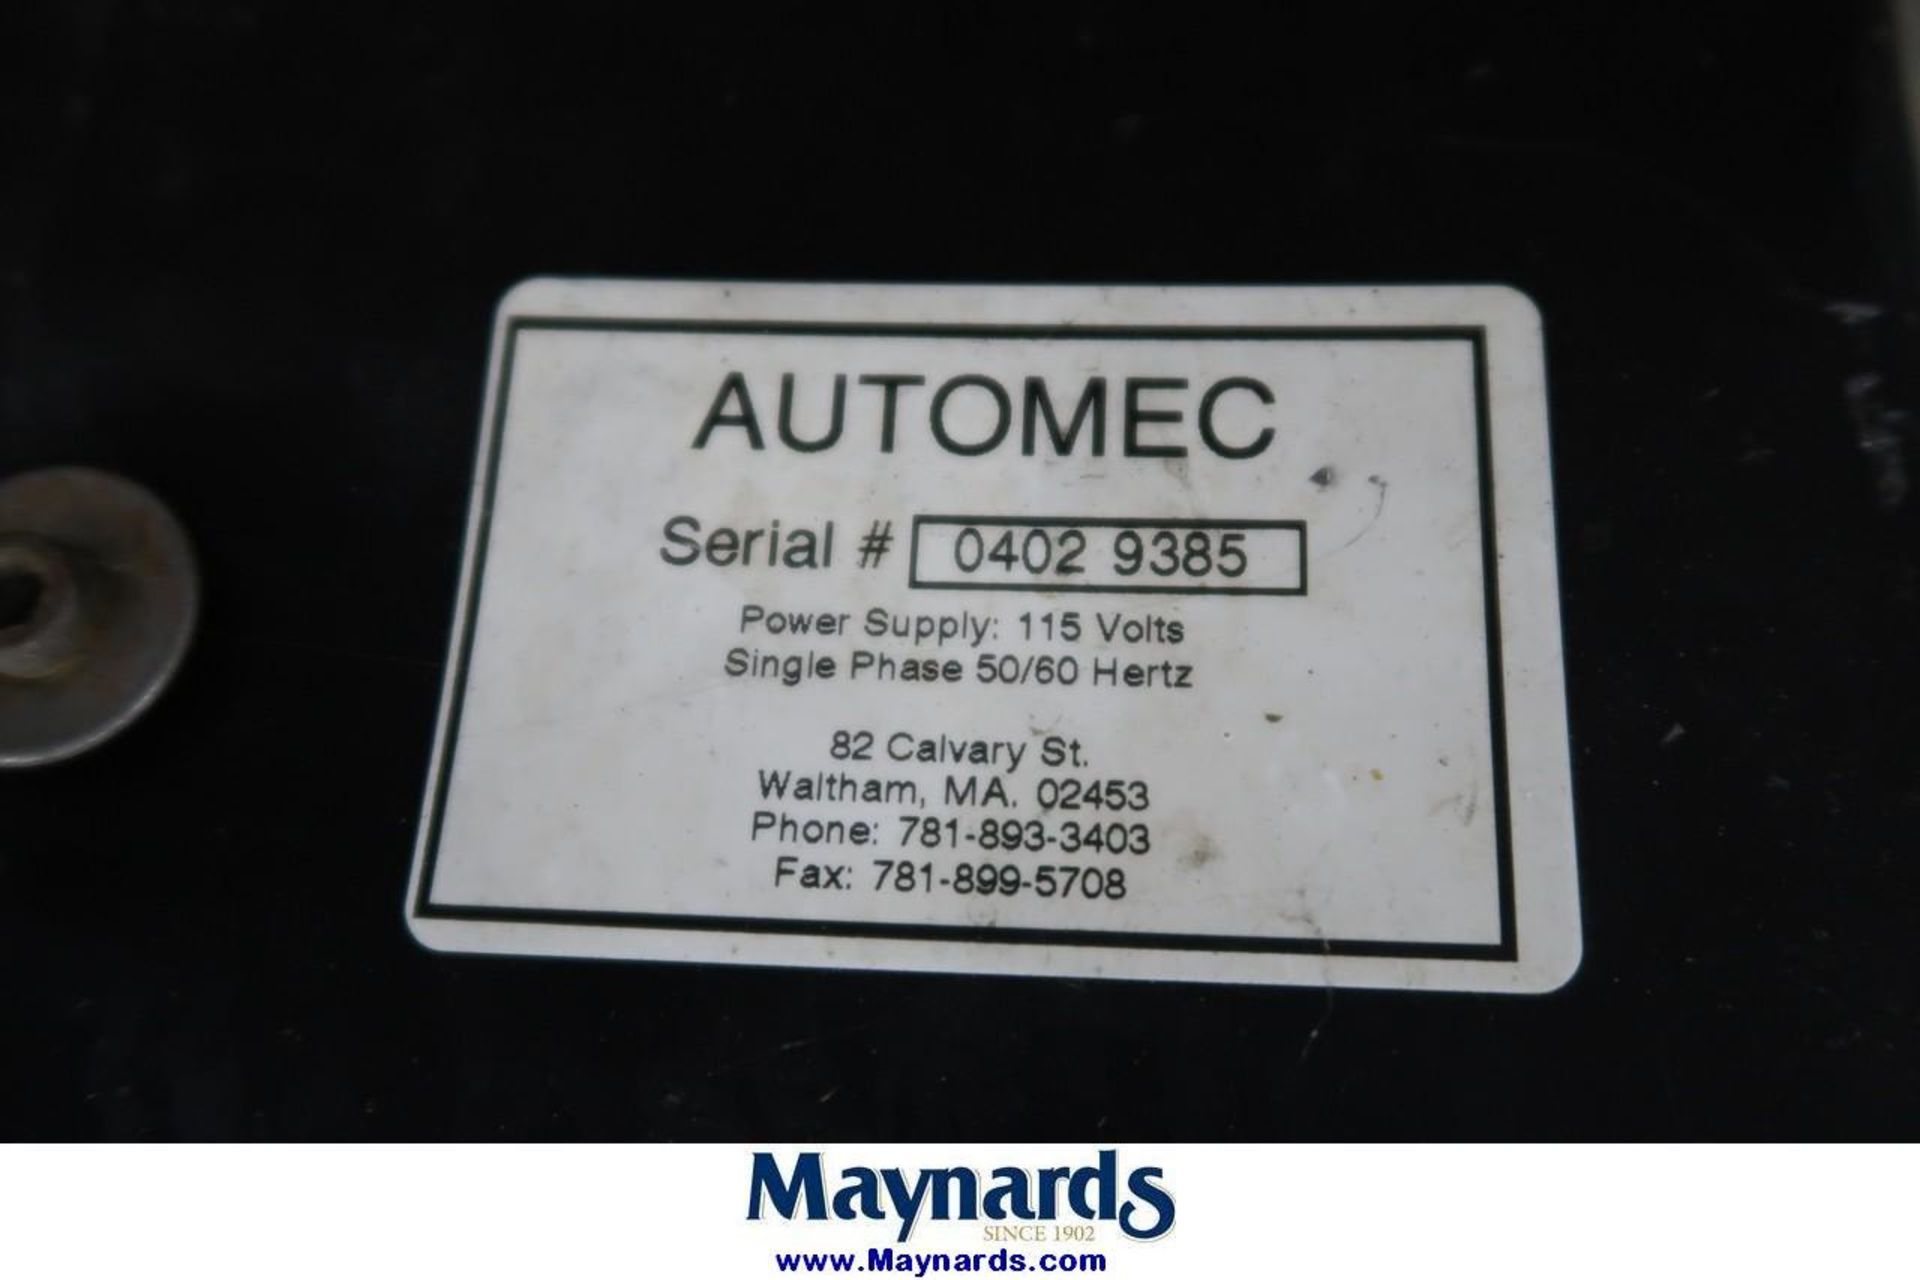 Automec Autogauge C24 24" Back Gauge - Image 2 of 2